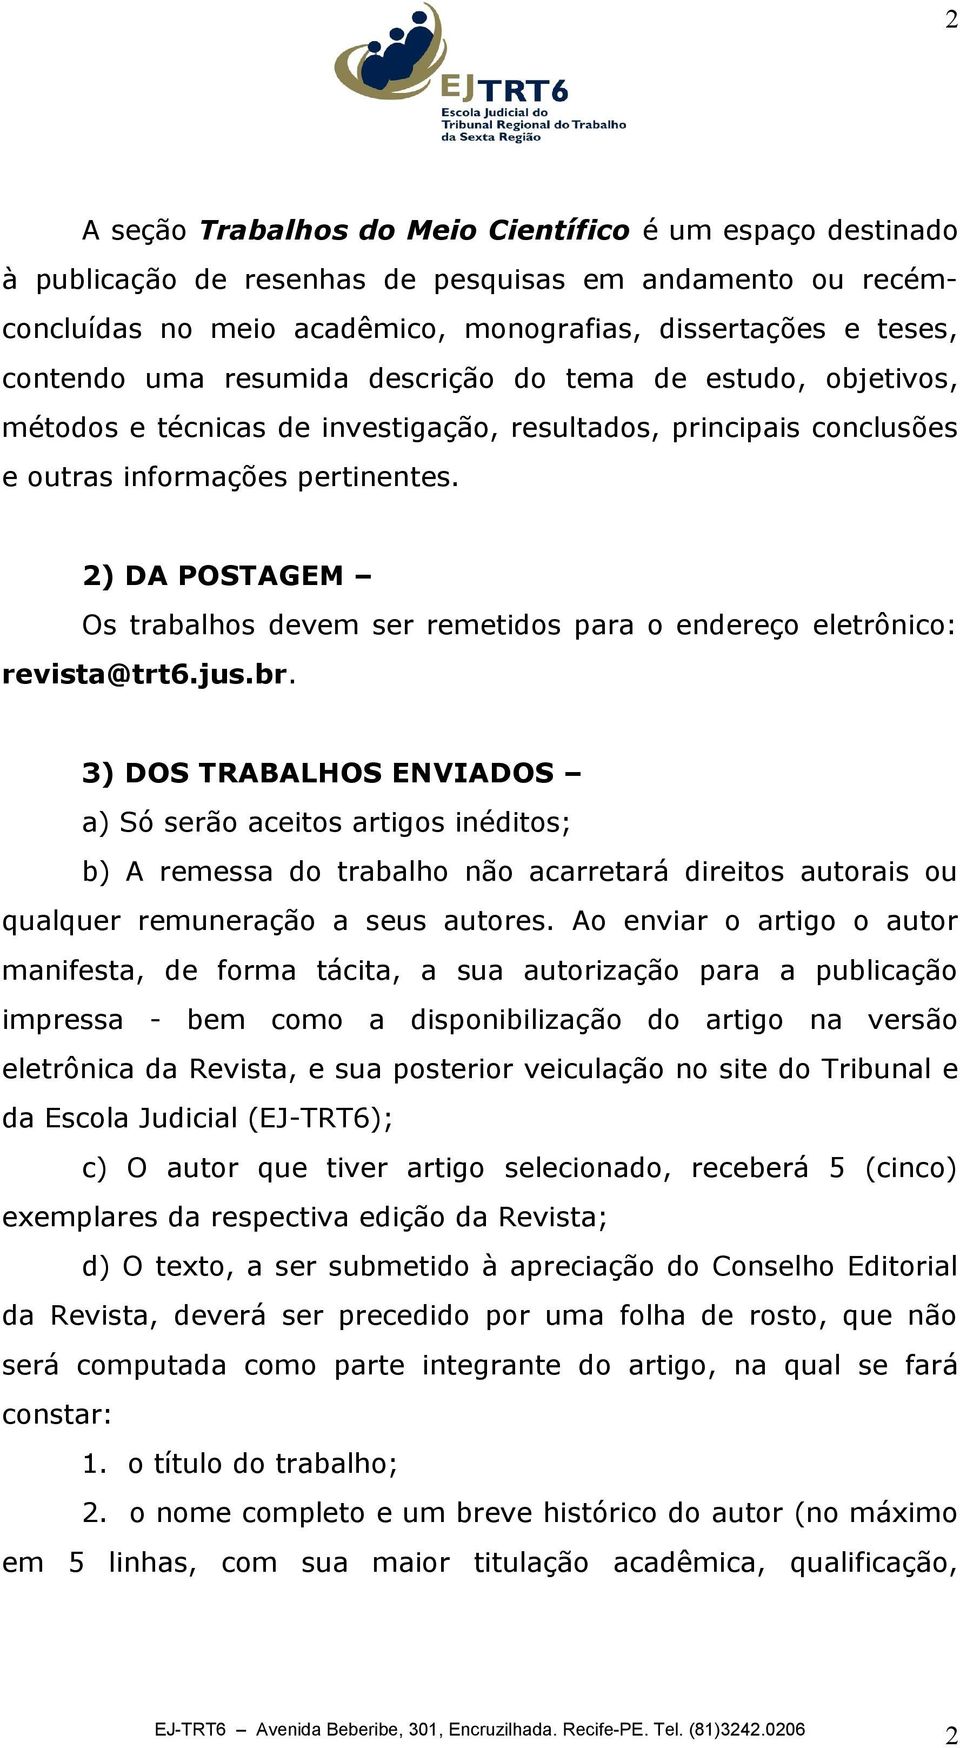 2) DA POSTAGEM Os trabalhos devem ser remetidos para o endereço eletrônico: revista@trt6.jus.br.